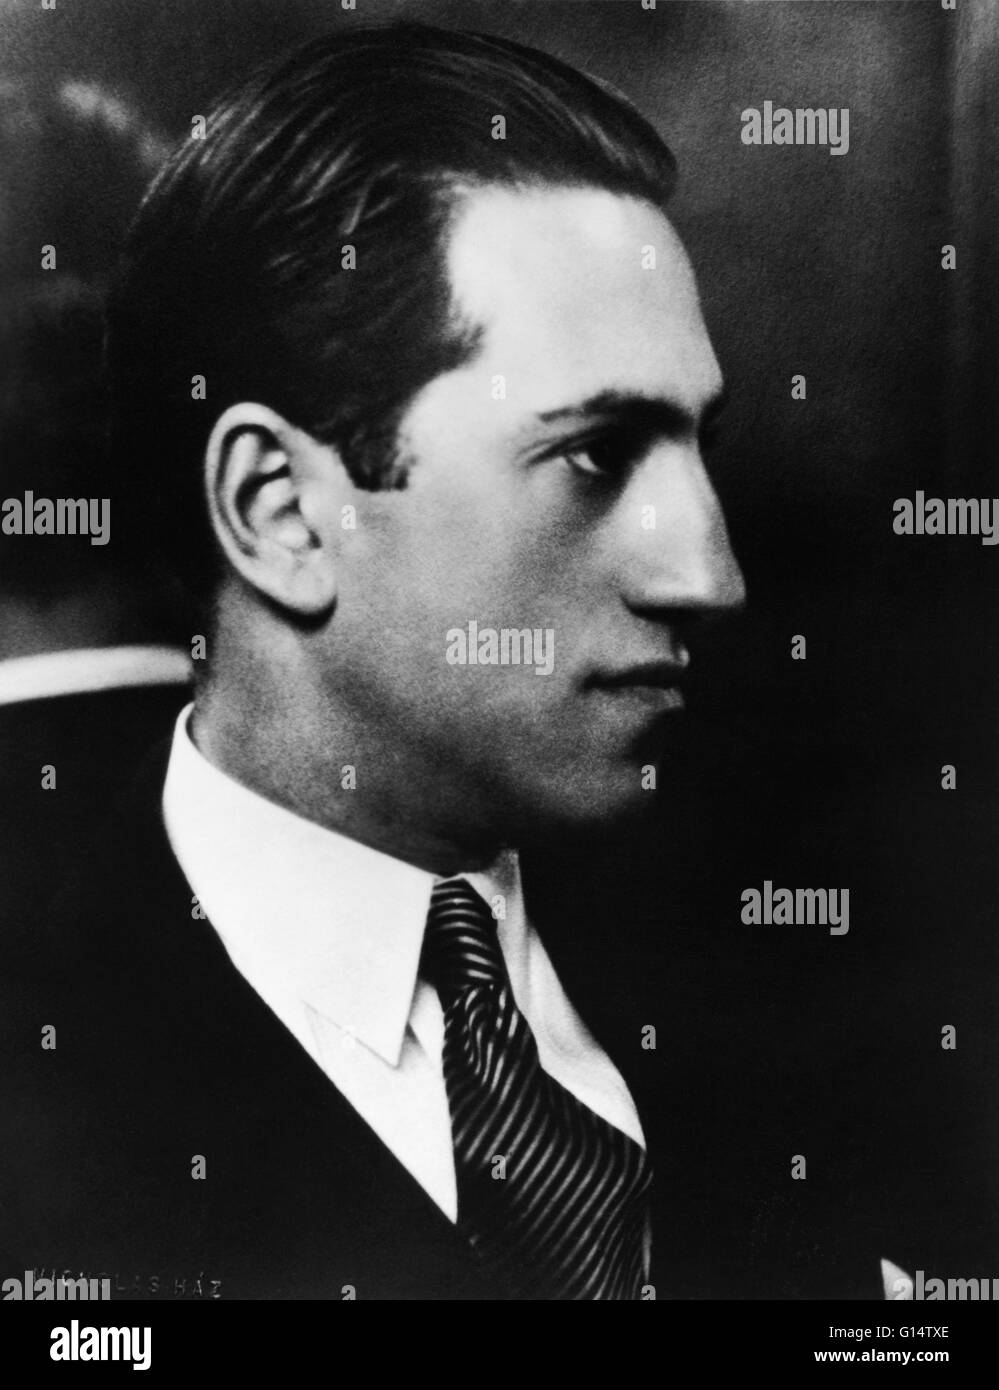 Foto de familia de Gershwin. George Gershwin (26 de septiembre de 1898 - 11 de julio de 1937) fue un compositor y pianista estadounidense. Sus composiciones abarcó ambos géneros clásicos y populares. Comenzó su carrera como una canción 'plugger', pero pronto comenzó a componer Broadwa Foto de stock